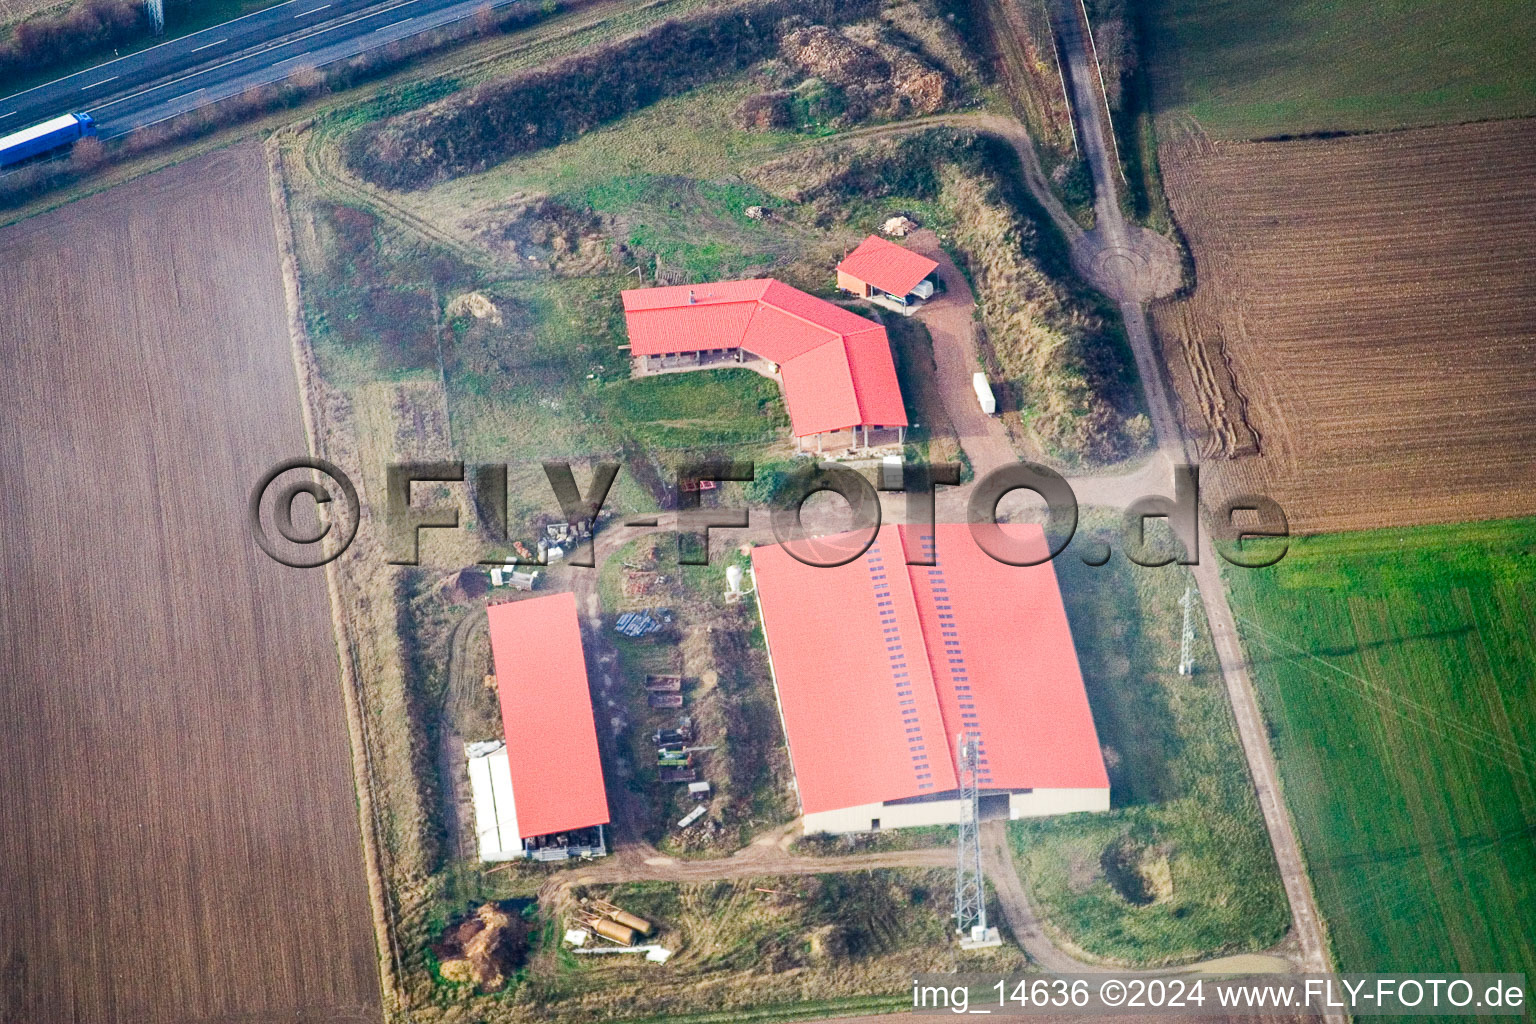 Hühnerhof Eierfarm in Erlenbach bei Kandel im Bundesland Rheinland-Pfalz, Deutschland vom Flugzeug aus